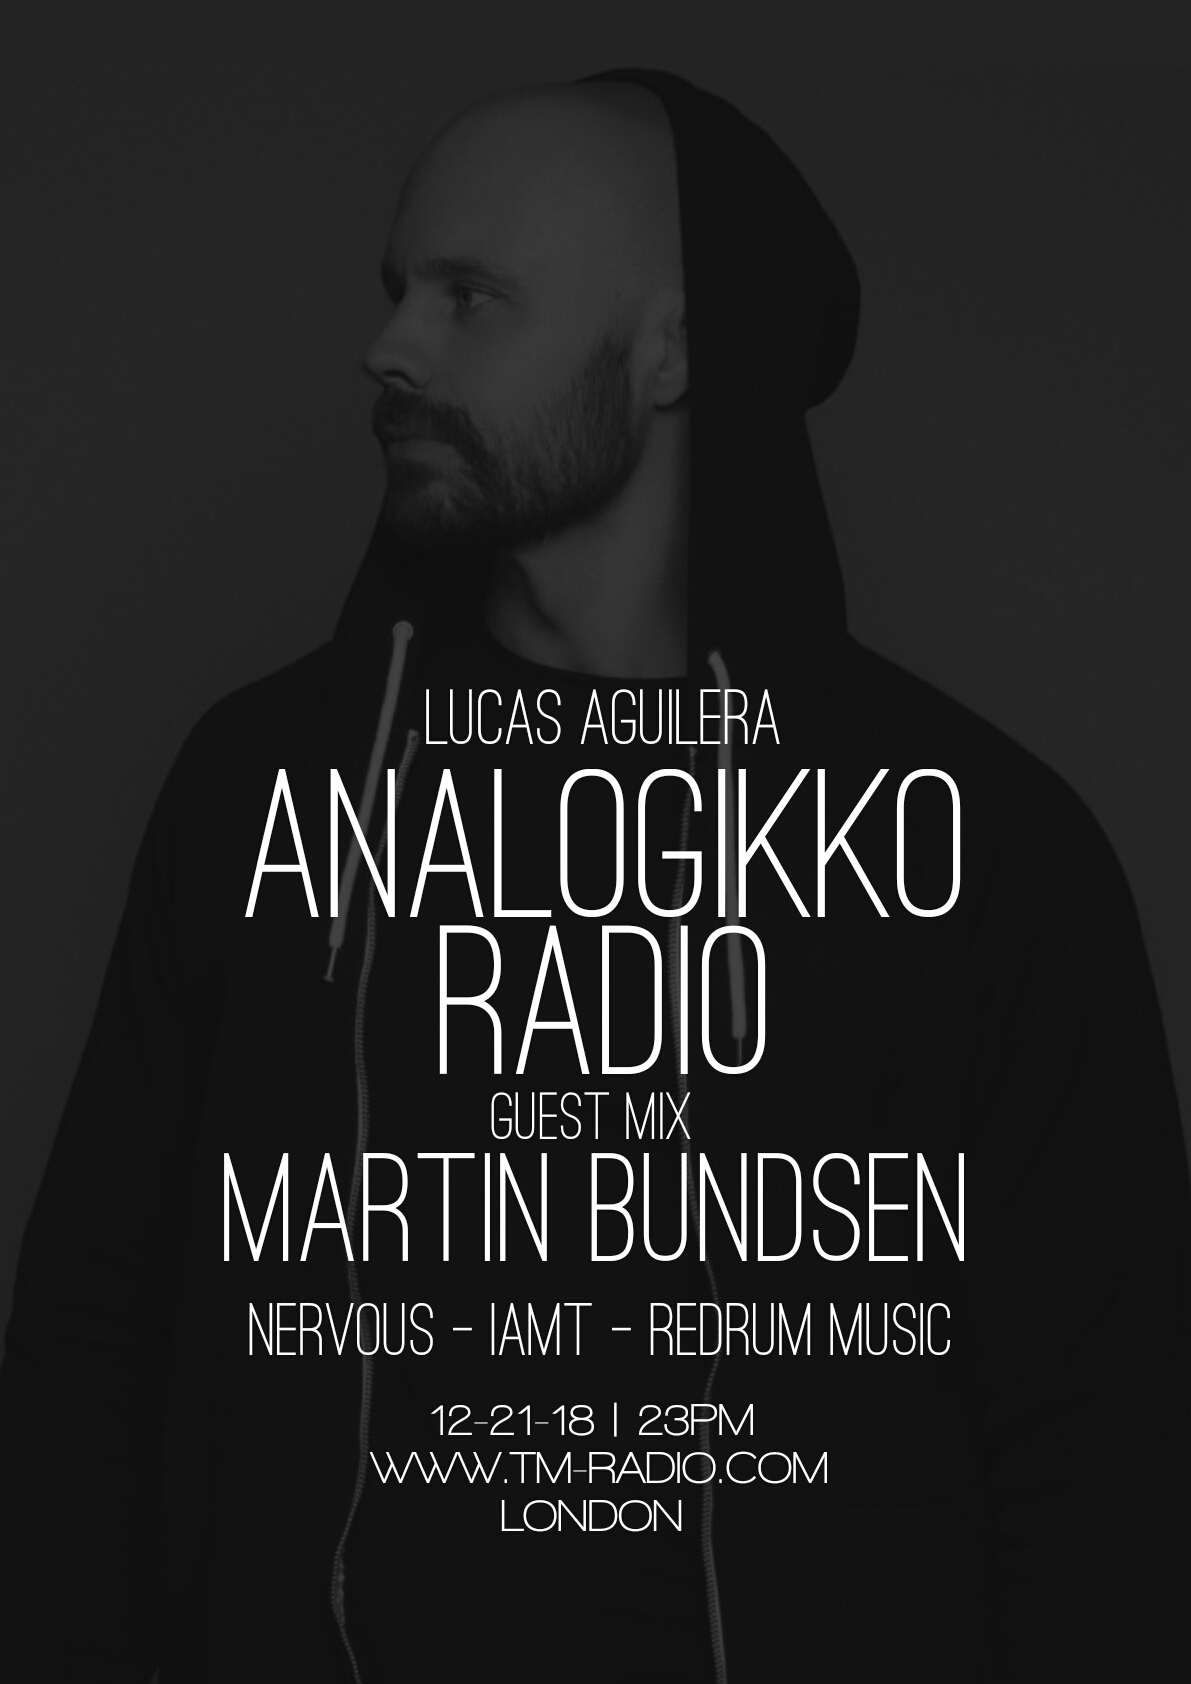 ANALOGIKKO RADIO BY LUCAS AGUILERA - MARTIN BUNDSEN - GUEST MIX - TM RADIO - Episode 041 (from December 21st, 2018)